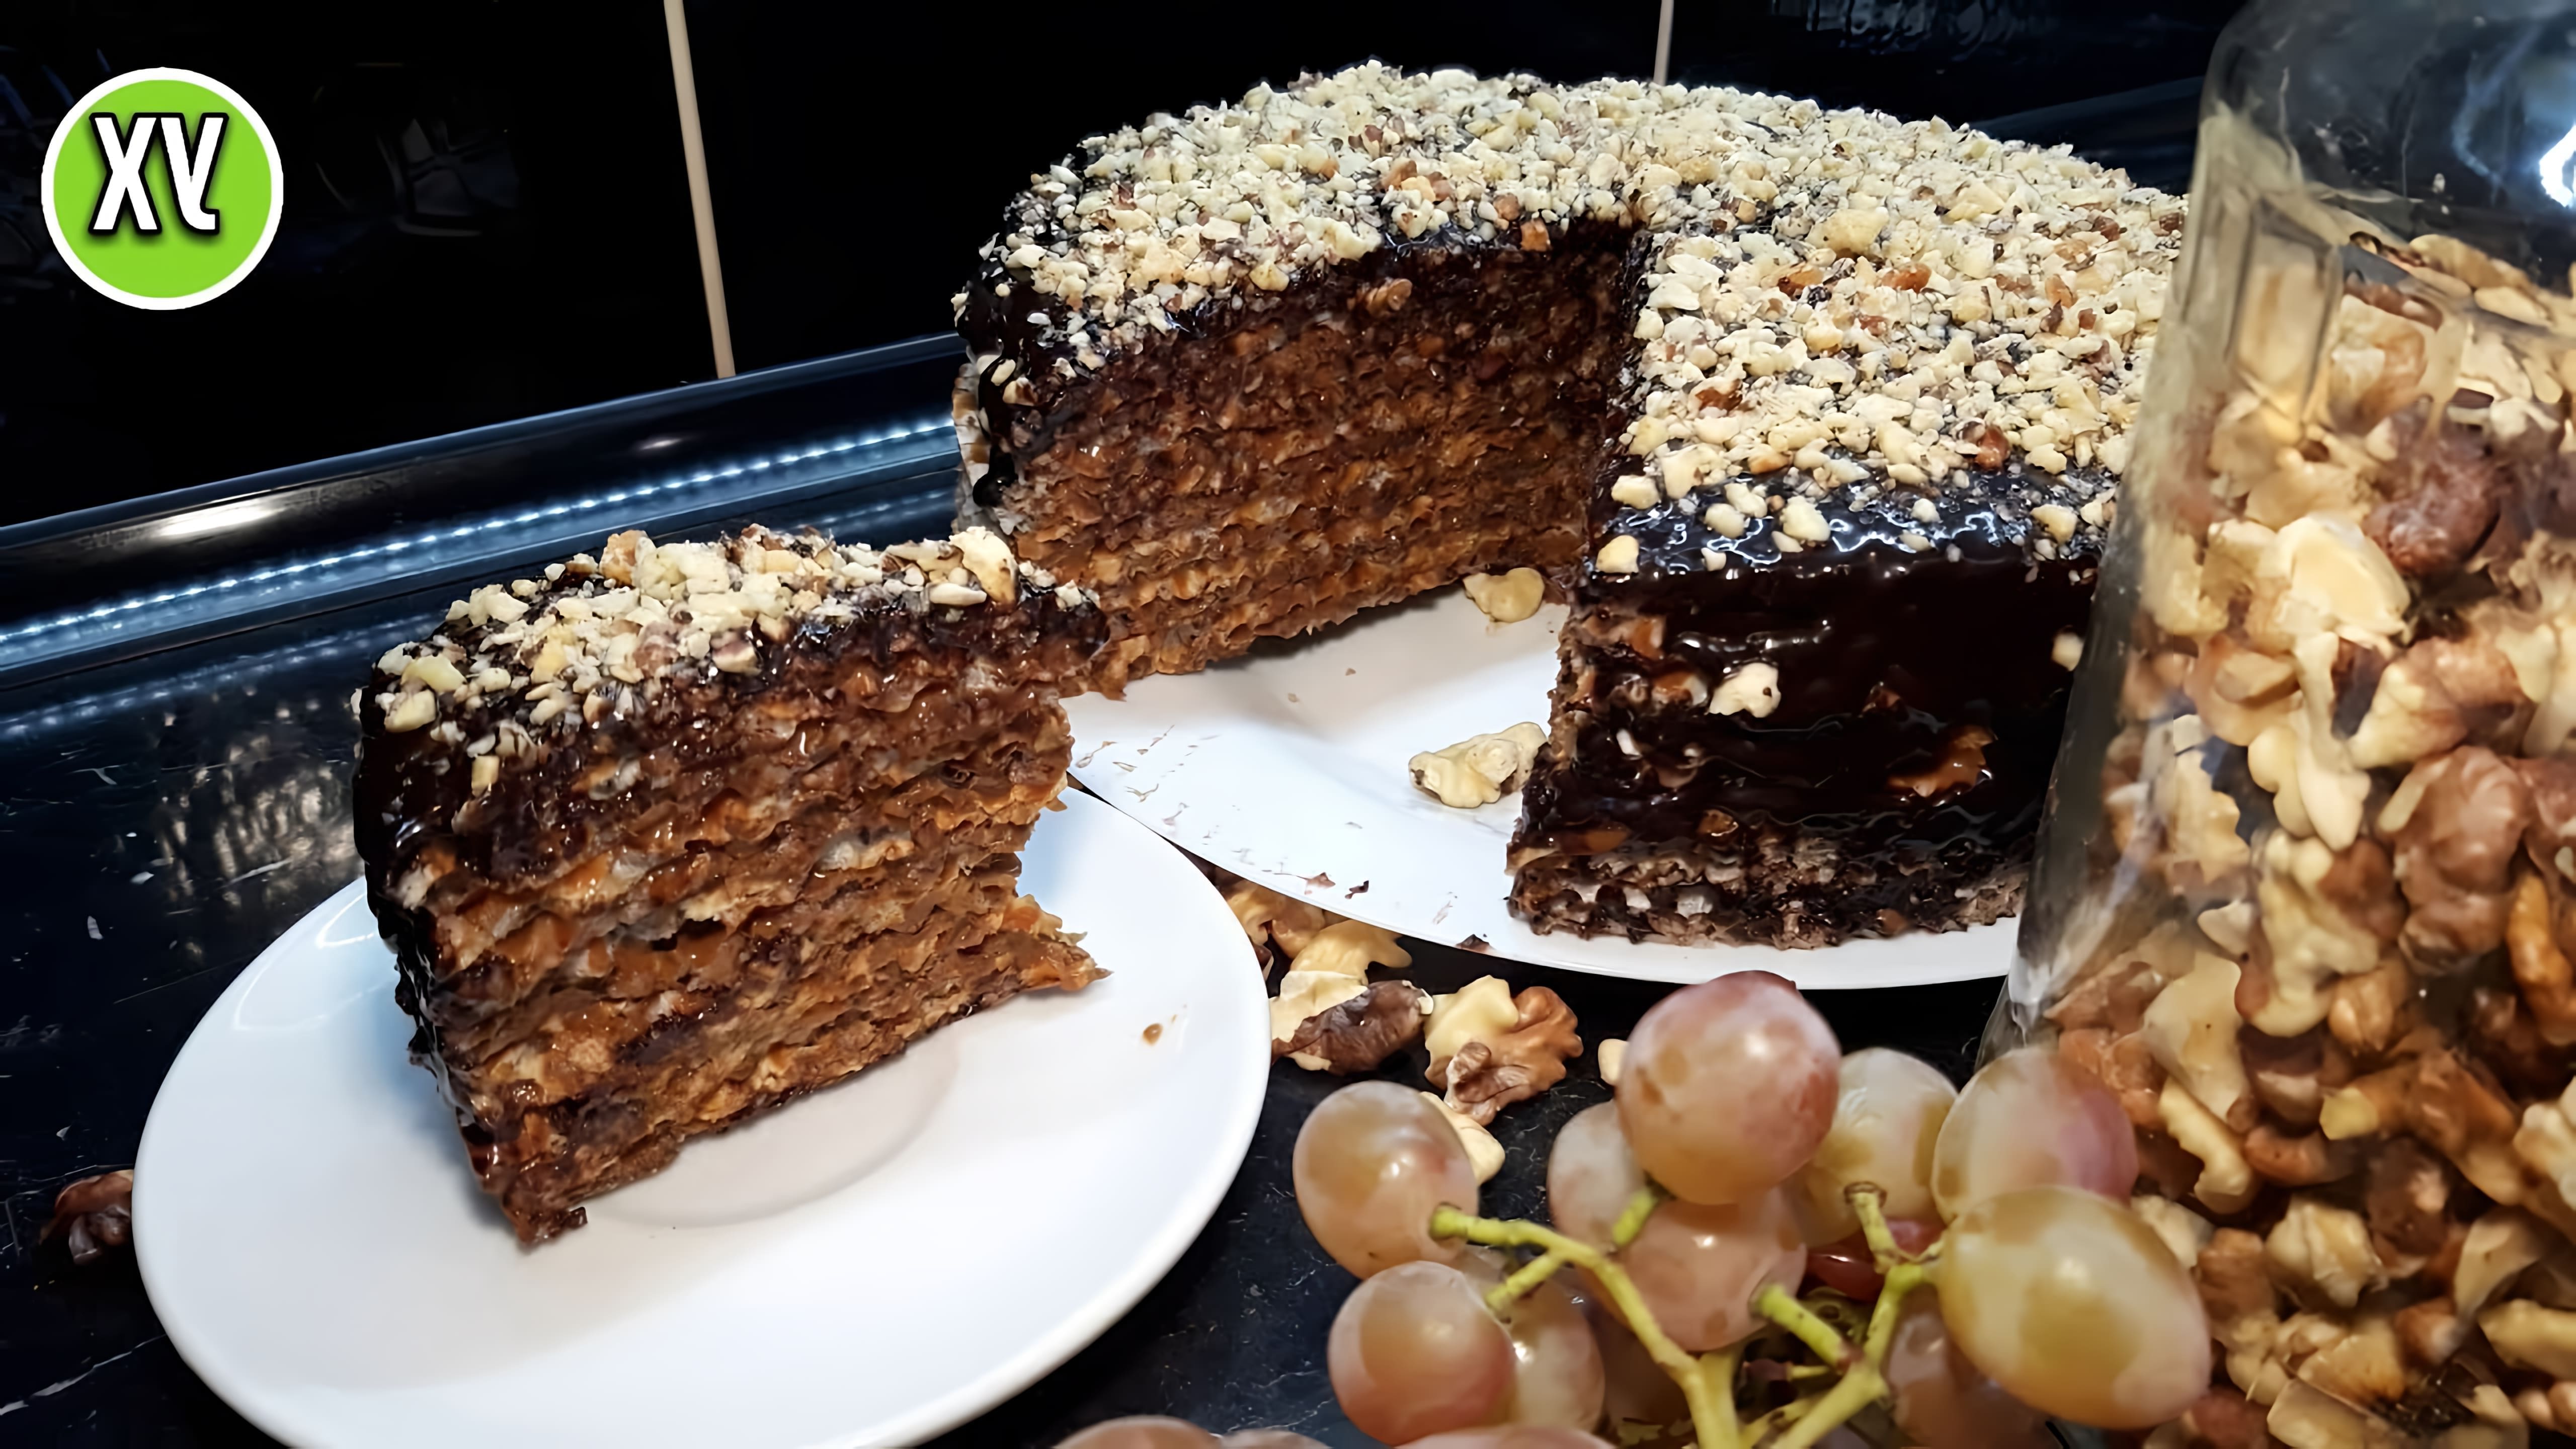 В этом видео демонстрируется рецепт приготовления вафельного торта с уникальной шоколадной глазурью